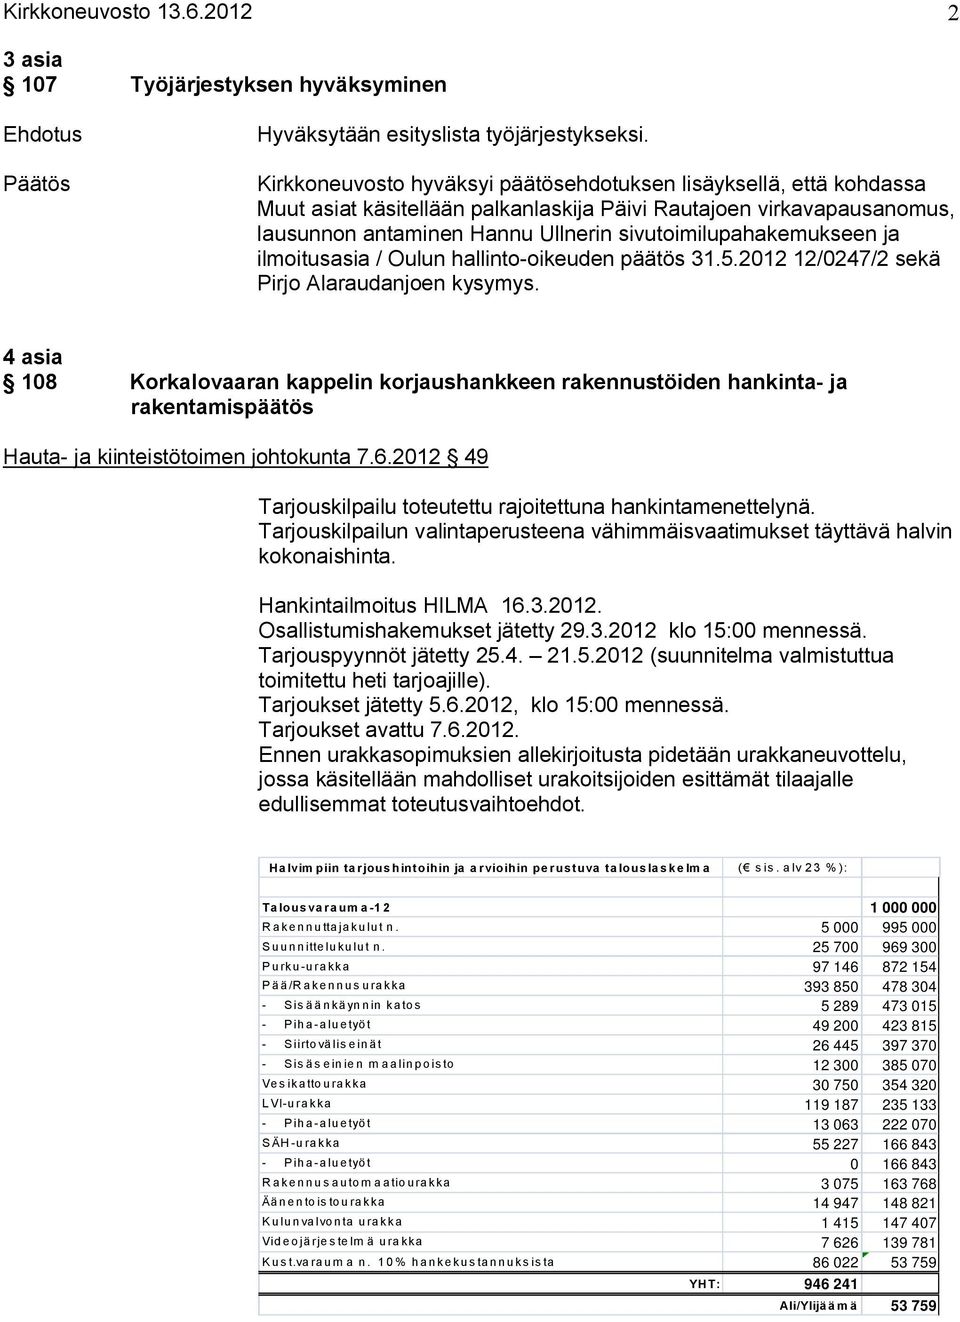 ja ilmoitusasia / Oulun hallinto oikeuden päätös 31.5.2012 12/0247/2 sekä Pirjo Alaraudanjoen kysymys.